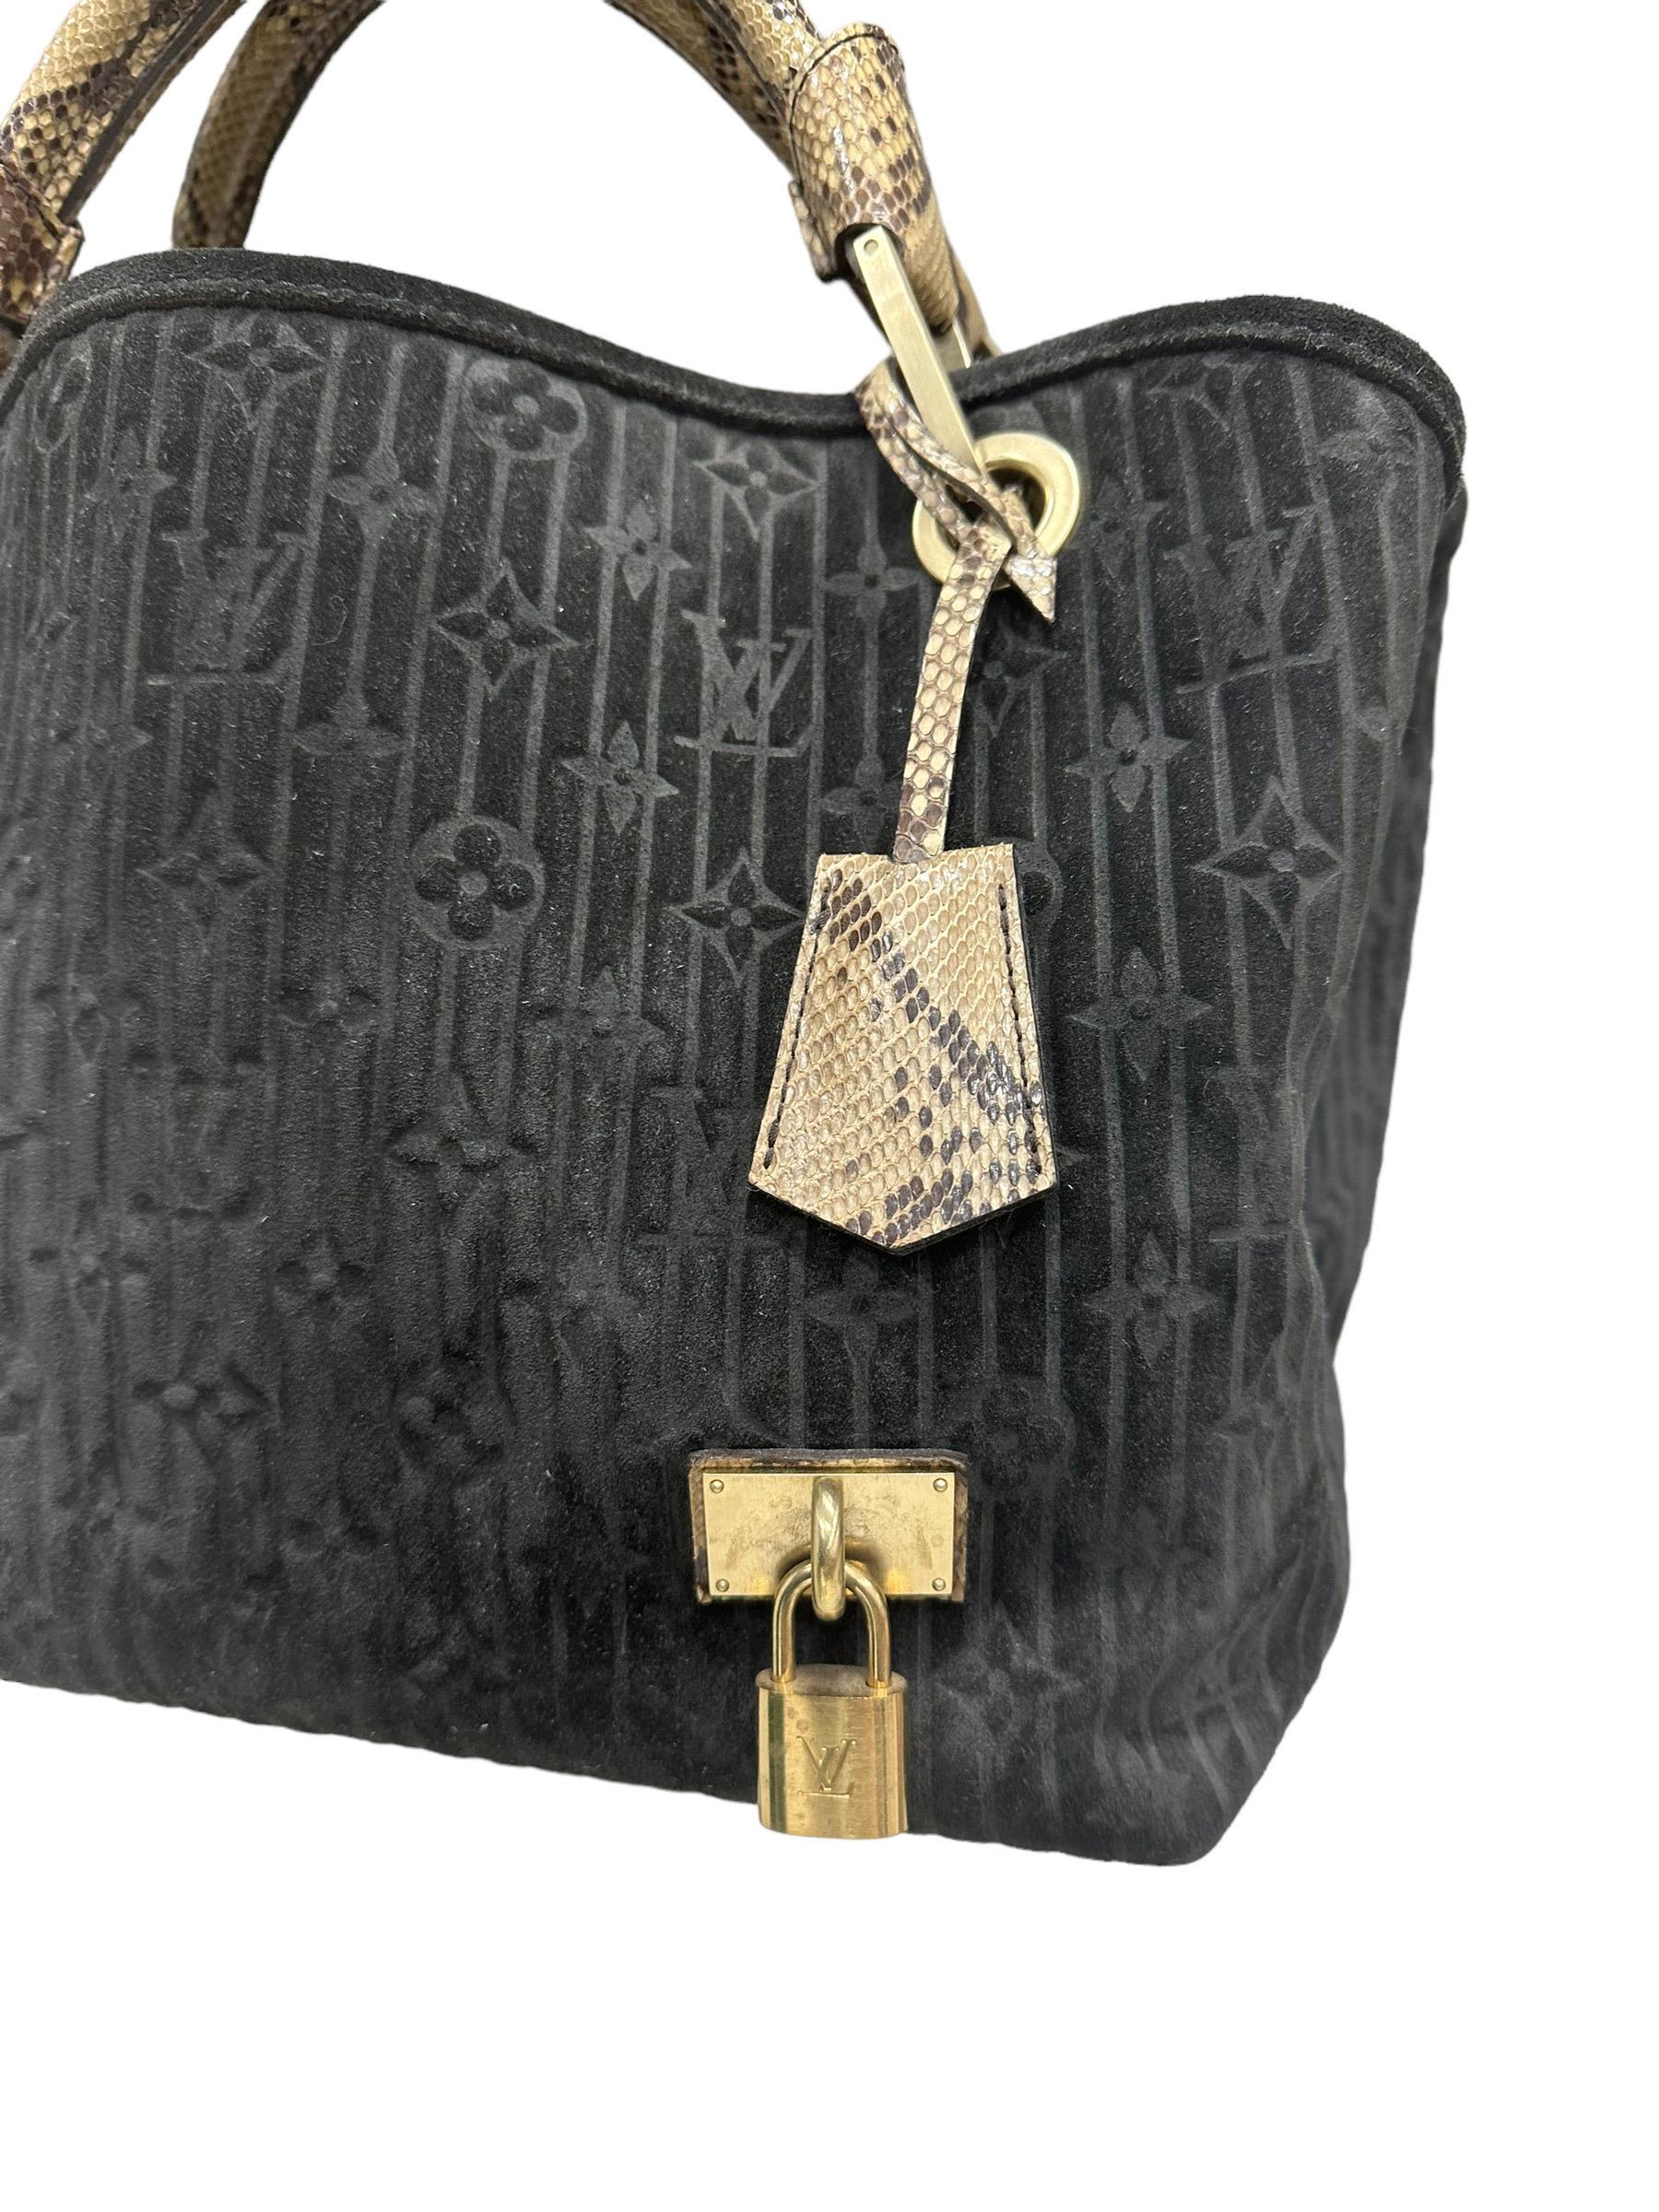 

Sac Louis Vuitton, modèle Whisper, collection automne-hiver 2008, en daim noir à motifs de monogrammes, avec des inserts en python et des pièces en or. Il n'est équipé d'aucun type de fermeture, mais possède une poche centrale avec fermeture à